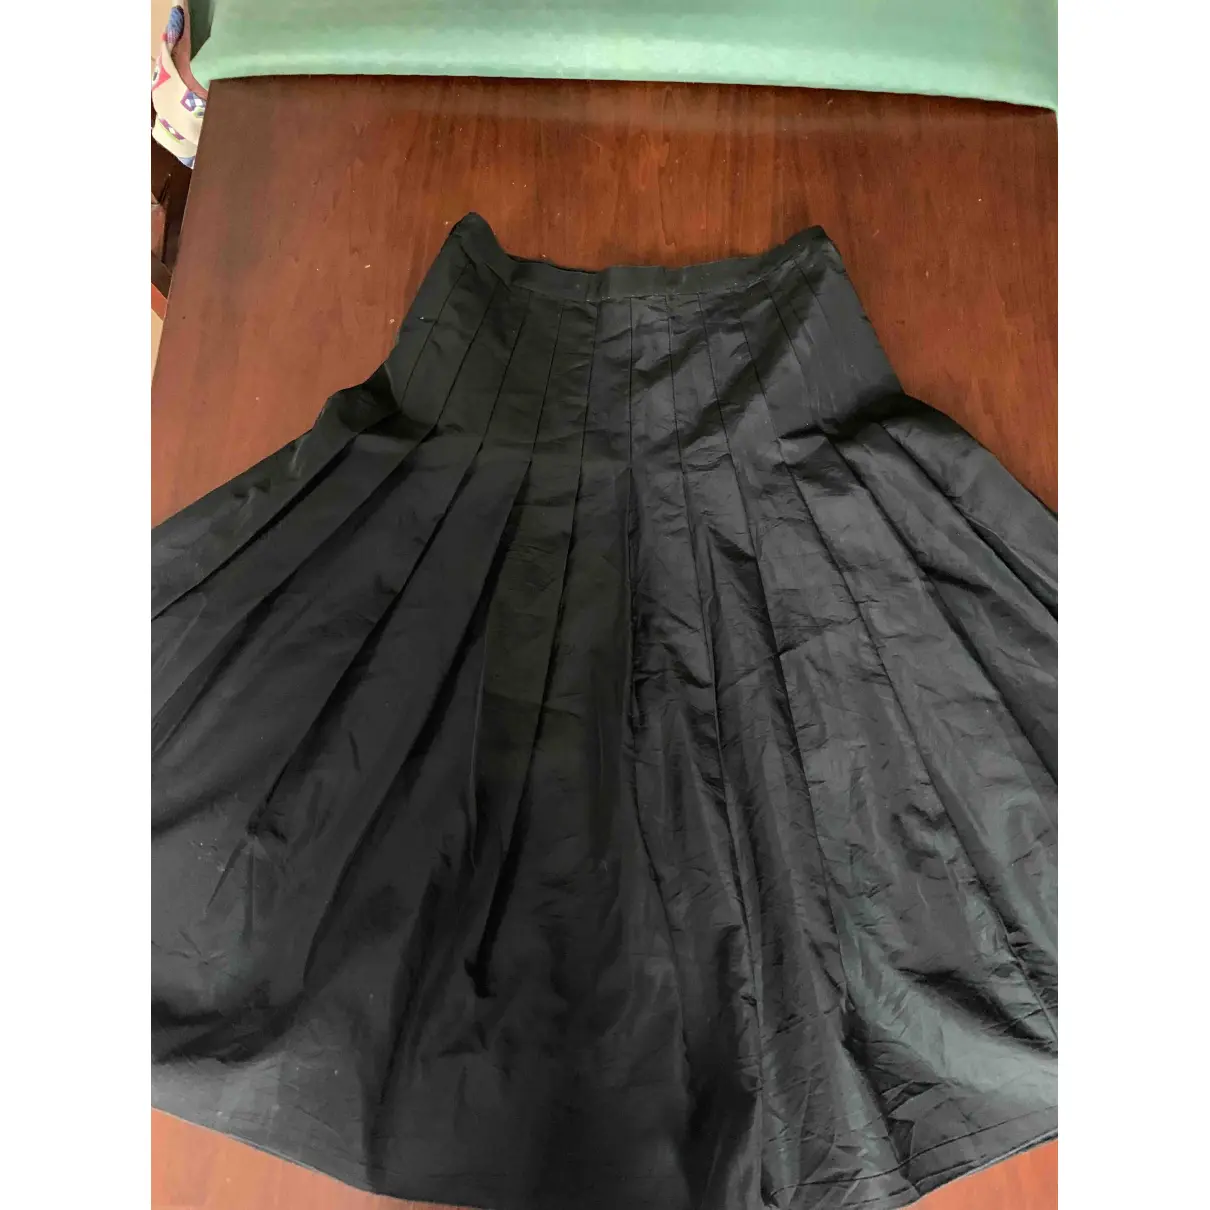 Buy Blumarine Mid-length skirt online